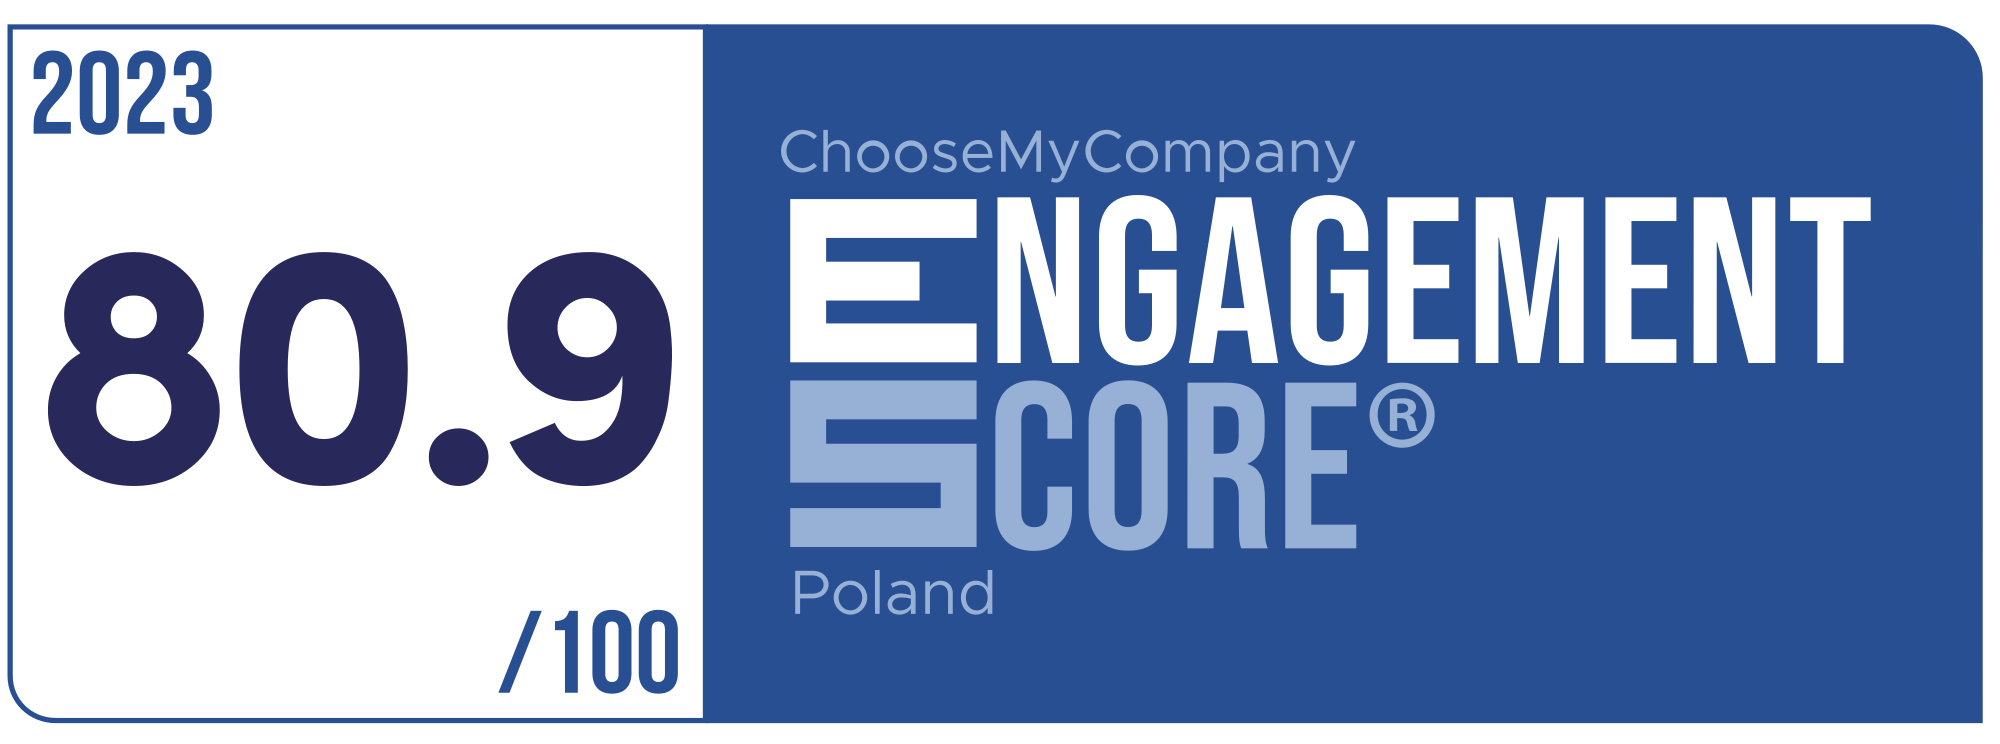 Label Engagement Score 2023 Poland